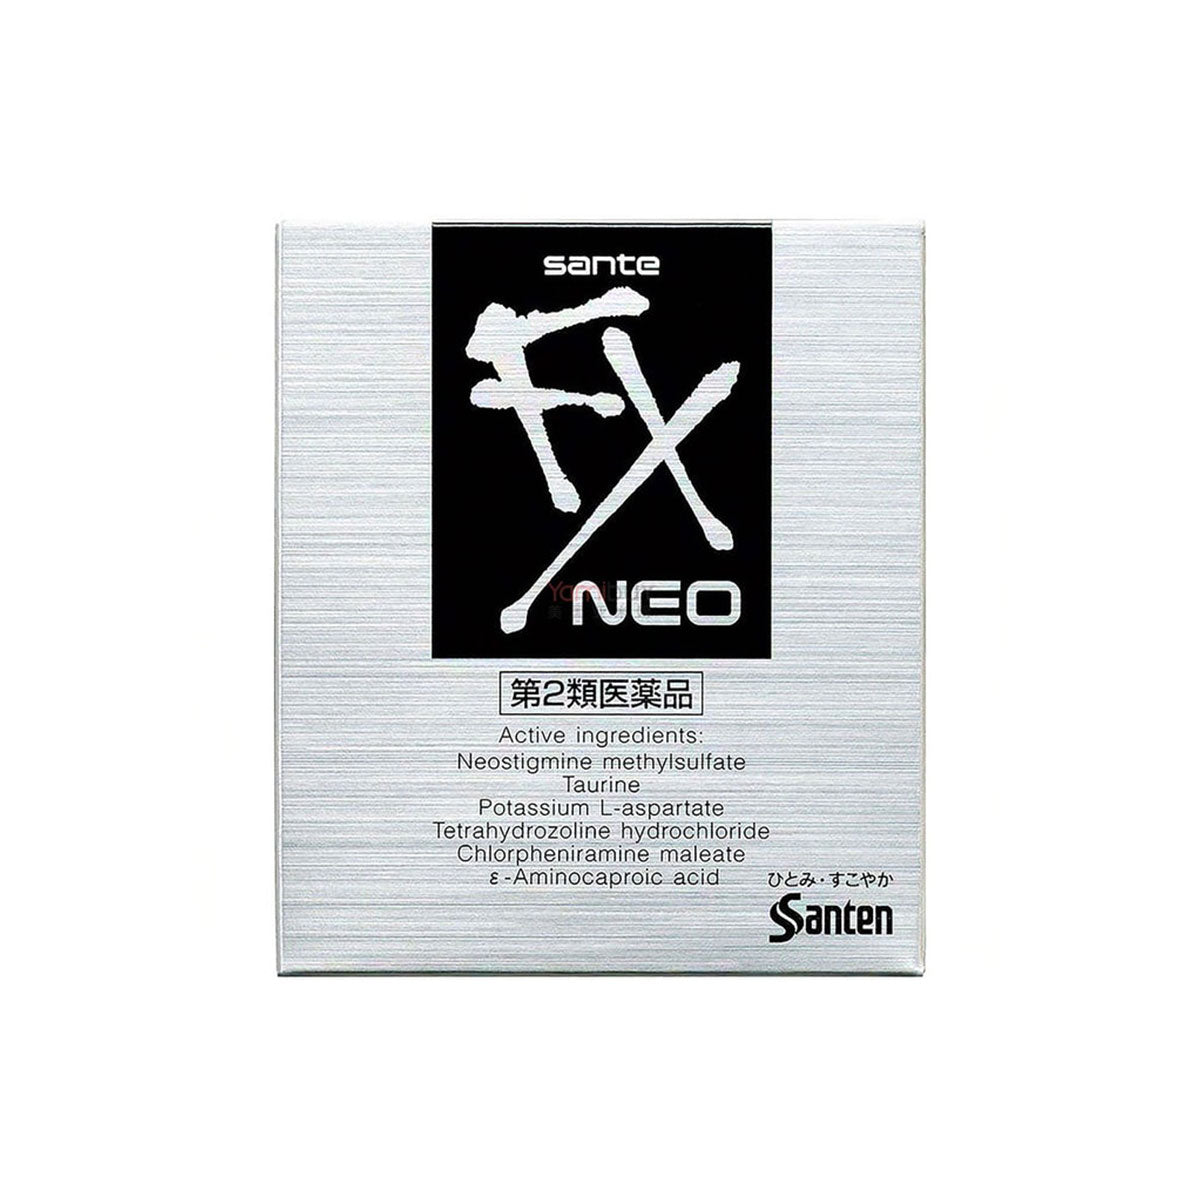 Sante FX Neo Eye Drops 12ml